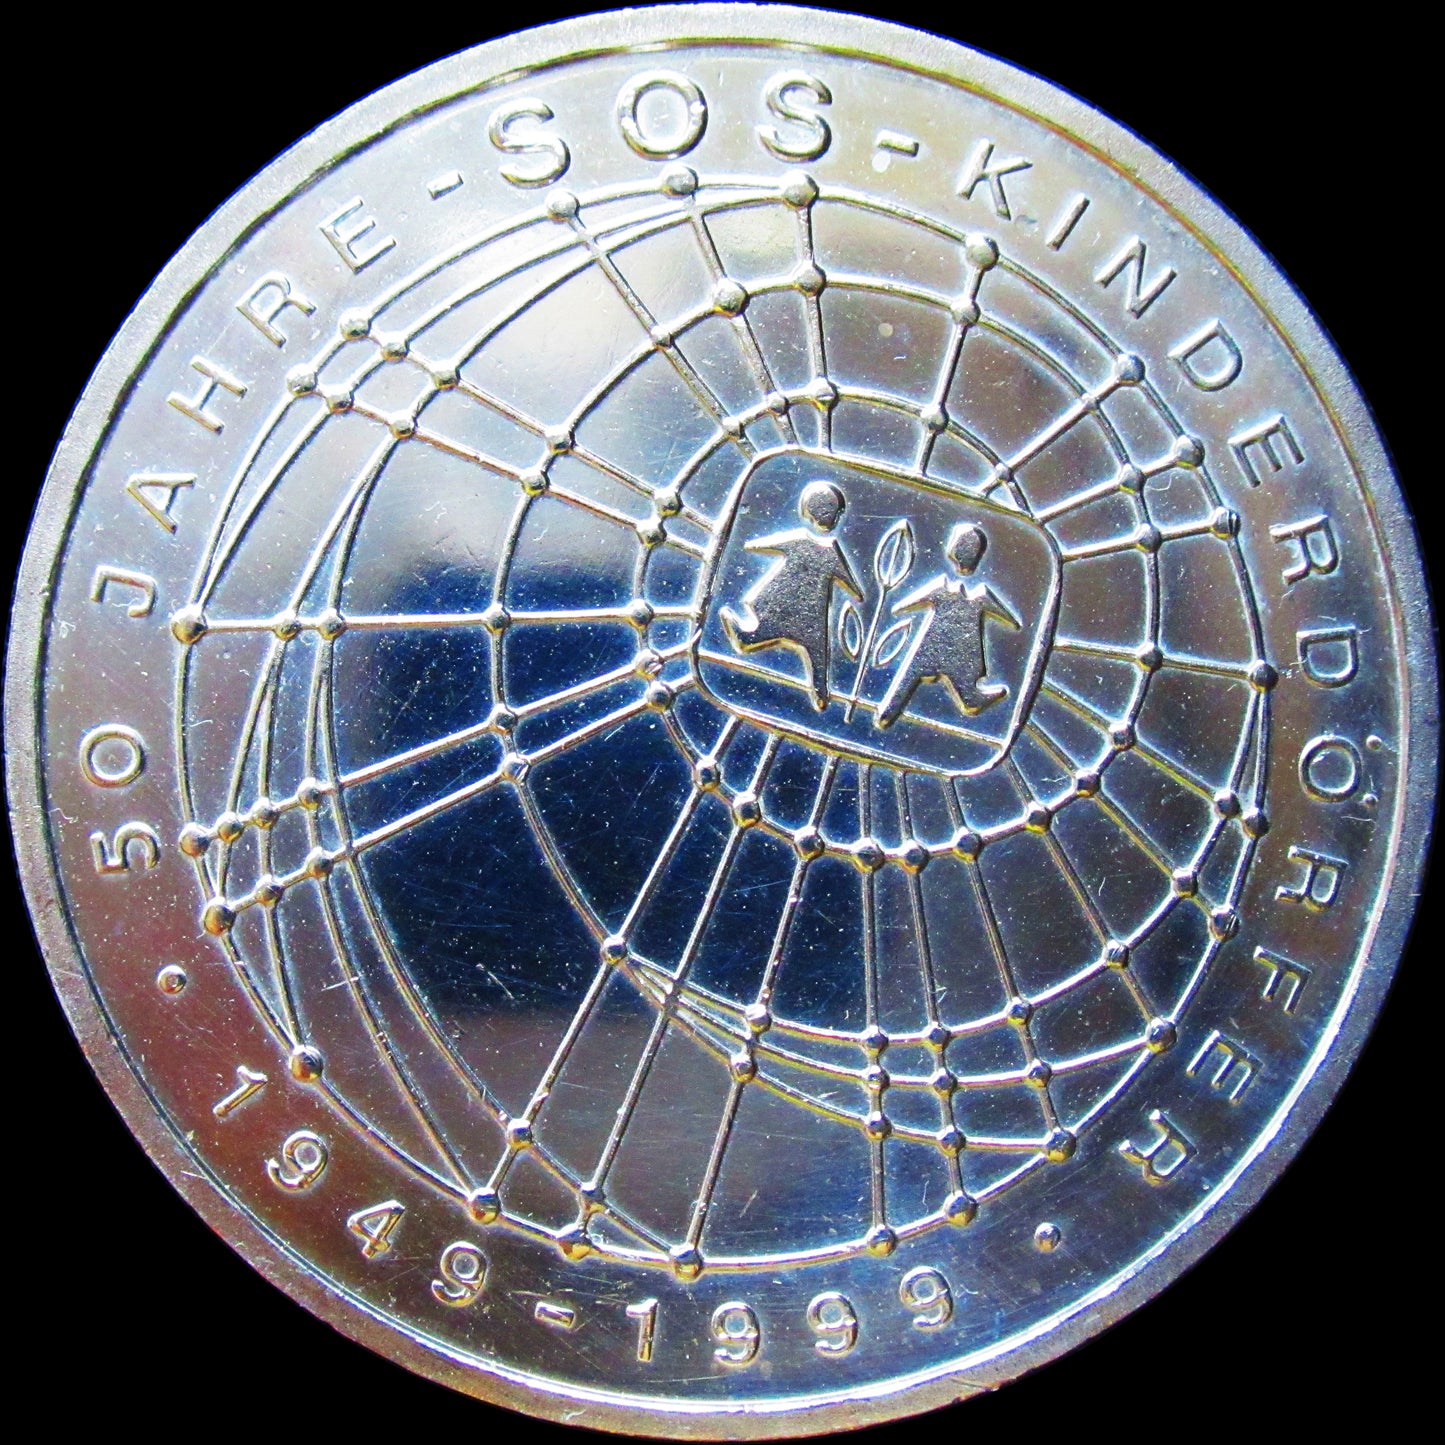 SOS KINDERDÖRFER, Serie 10 DM Silbermünze, 1999